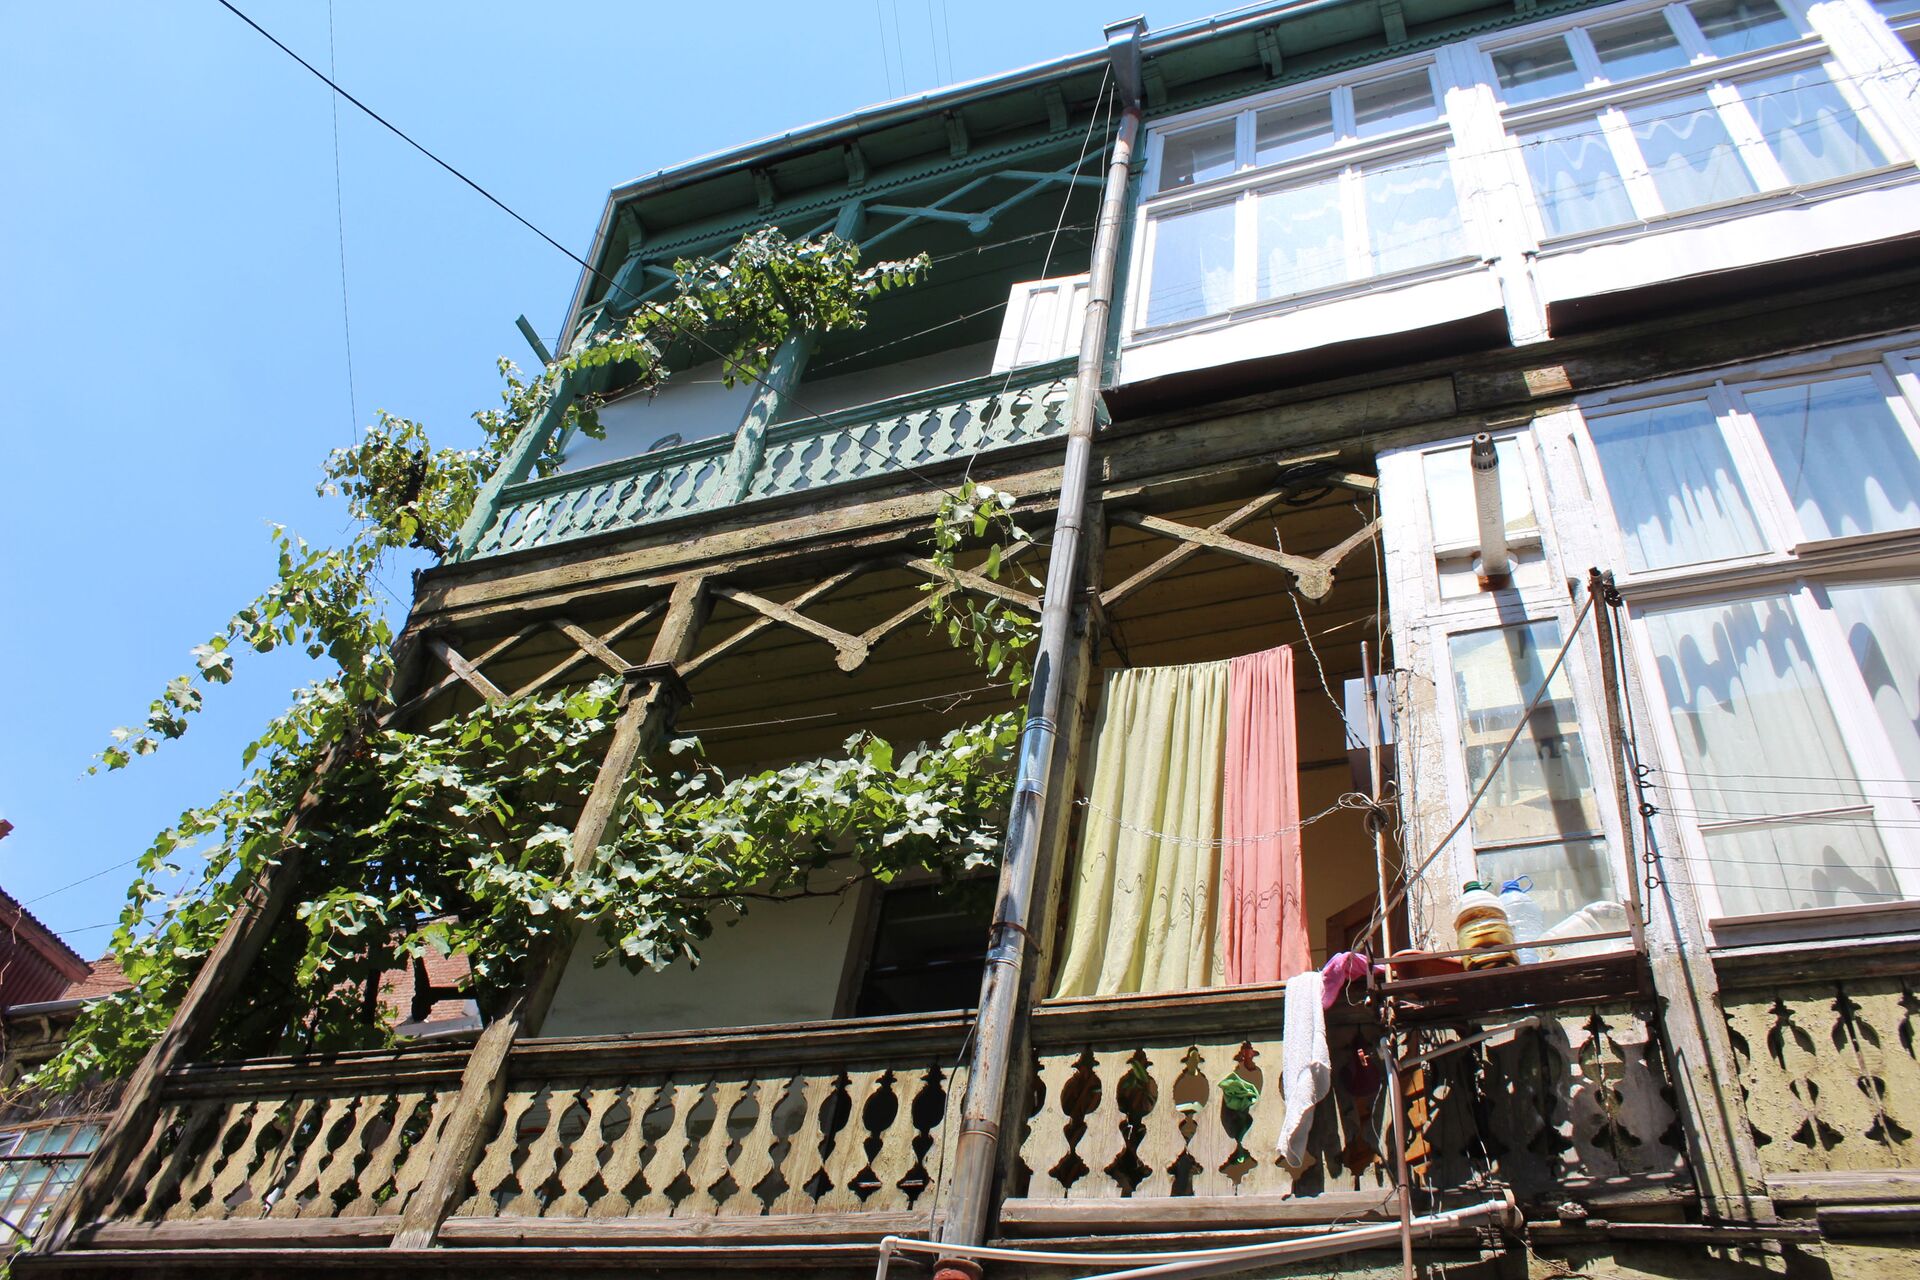 Тбилисские балконы и виноградная лоза - взаимодополняющие субстанции - Sputnik Грузия, 1920, 24.08.2021